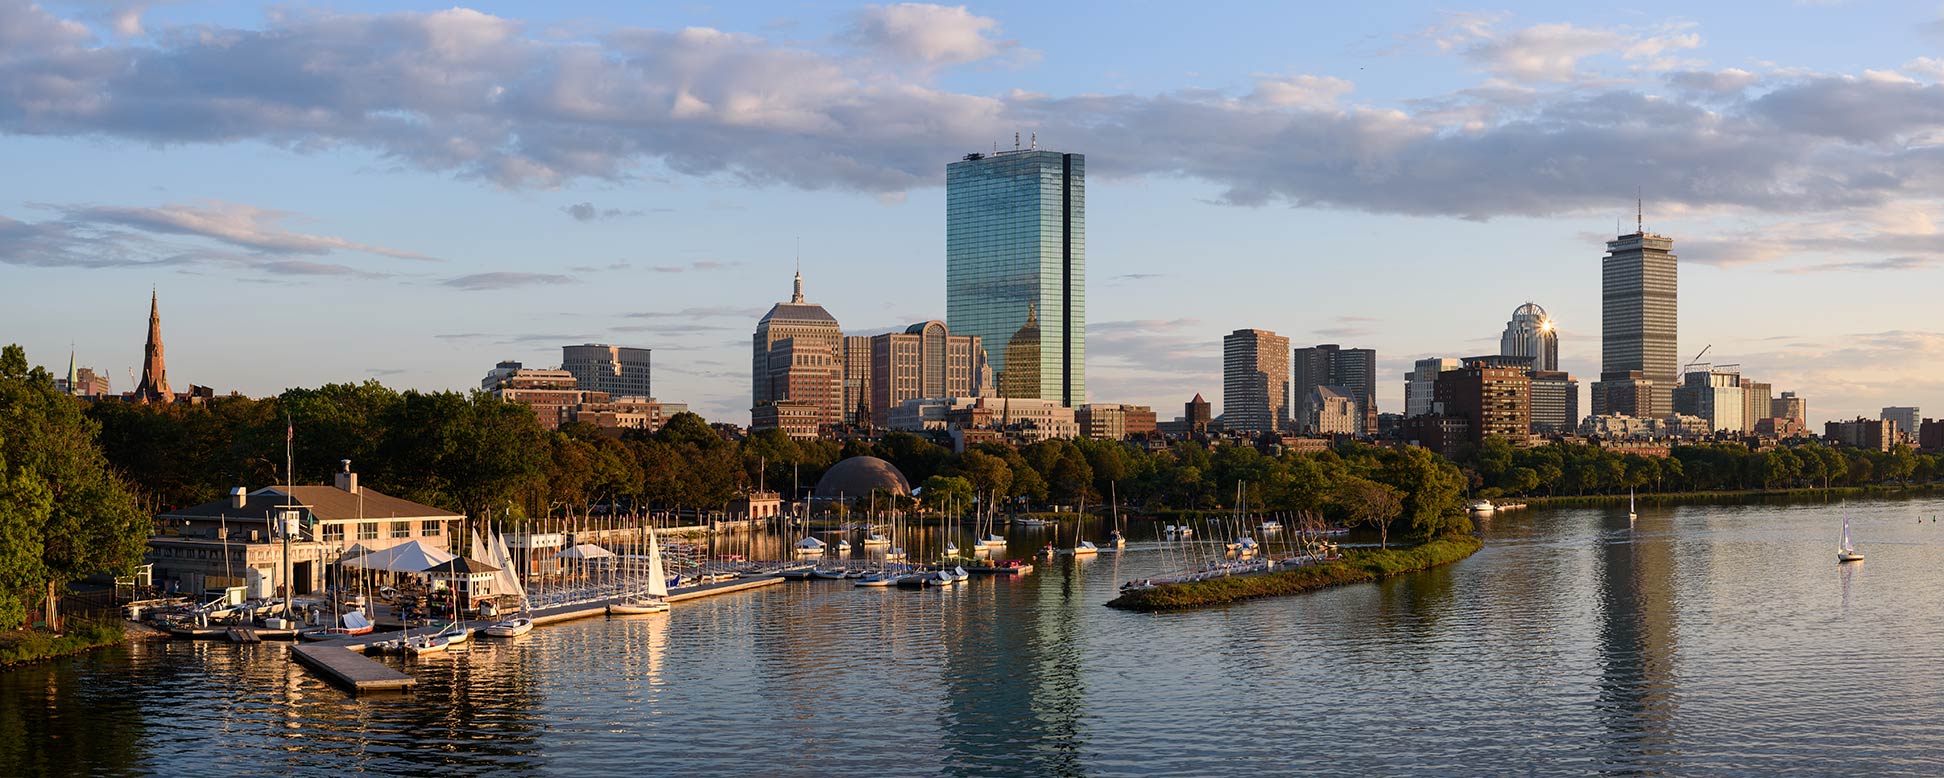 Boston panorama of Back Bay skyline from Longfellow Bridge, Massachusetts